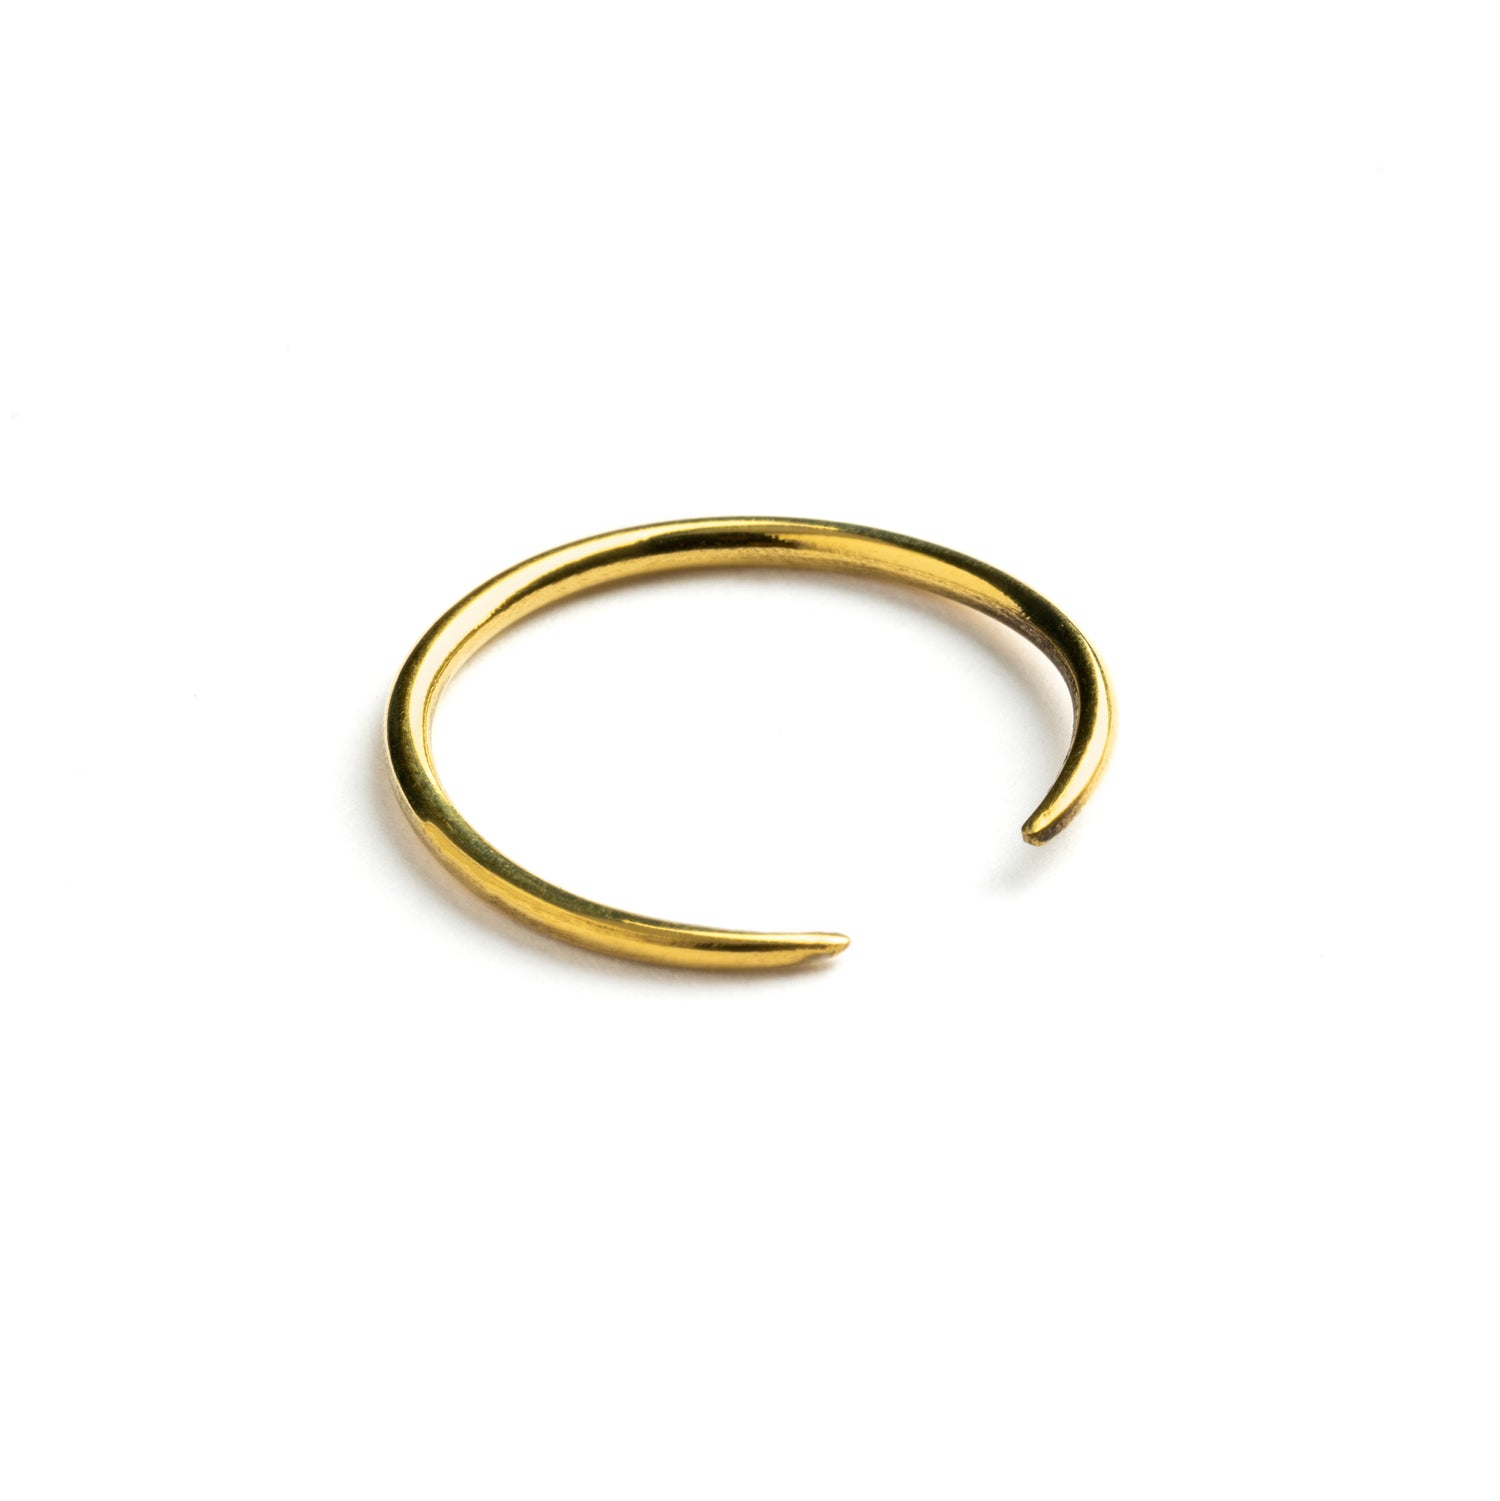 single golden brass wire horseshoe earring left side view